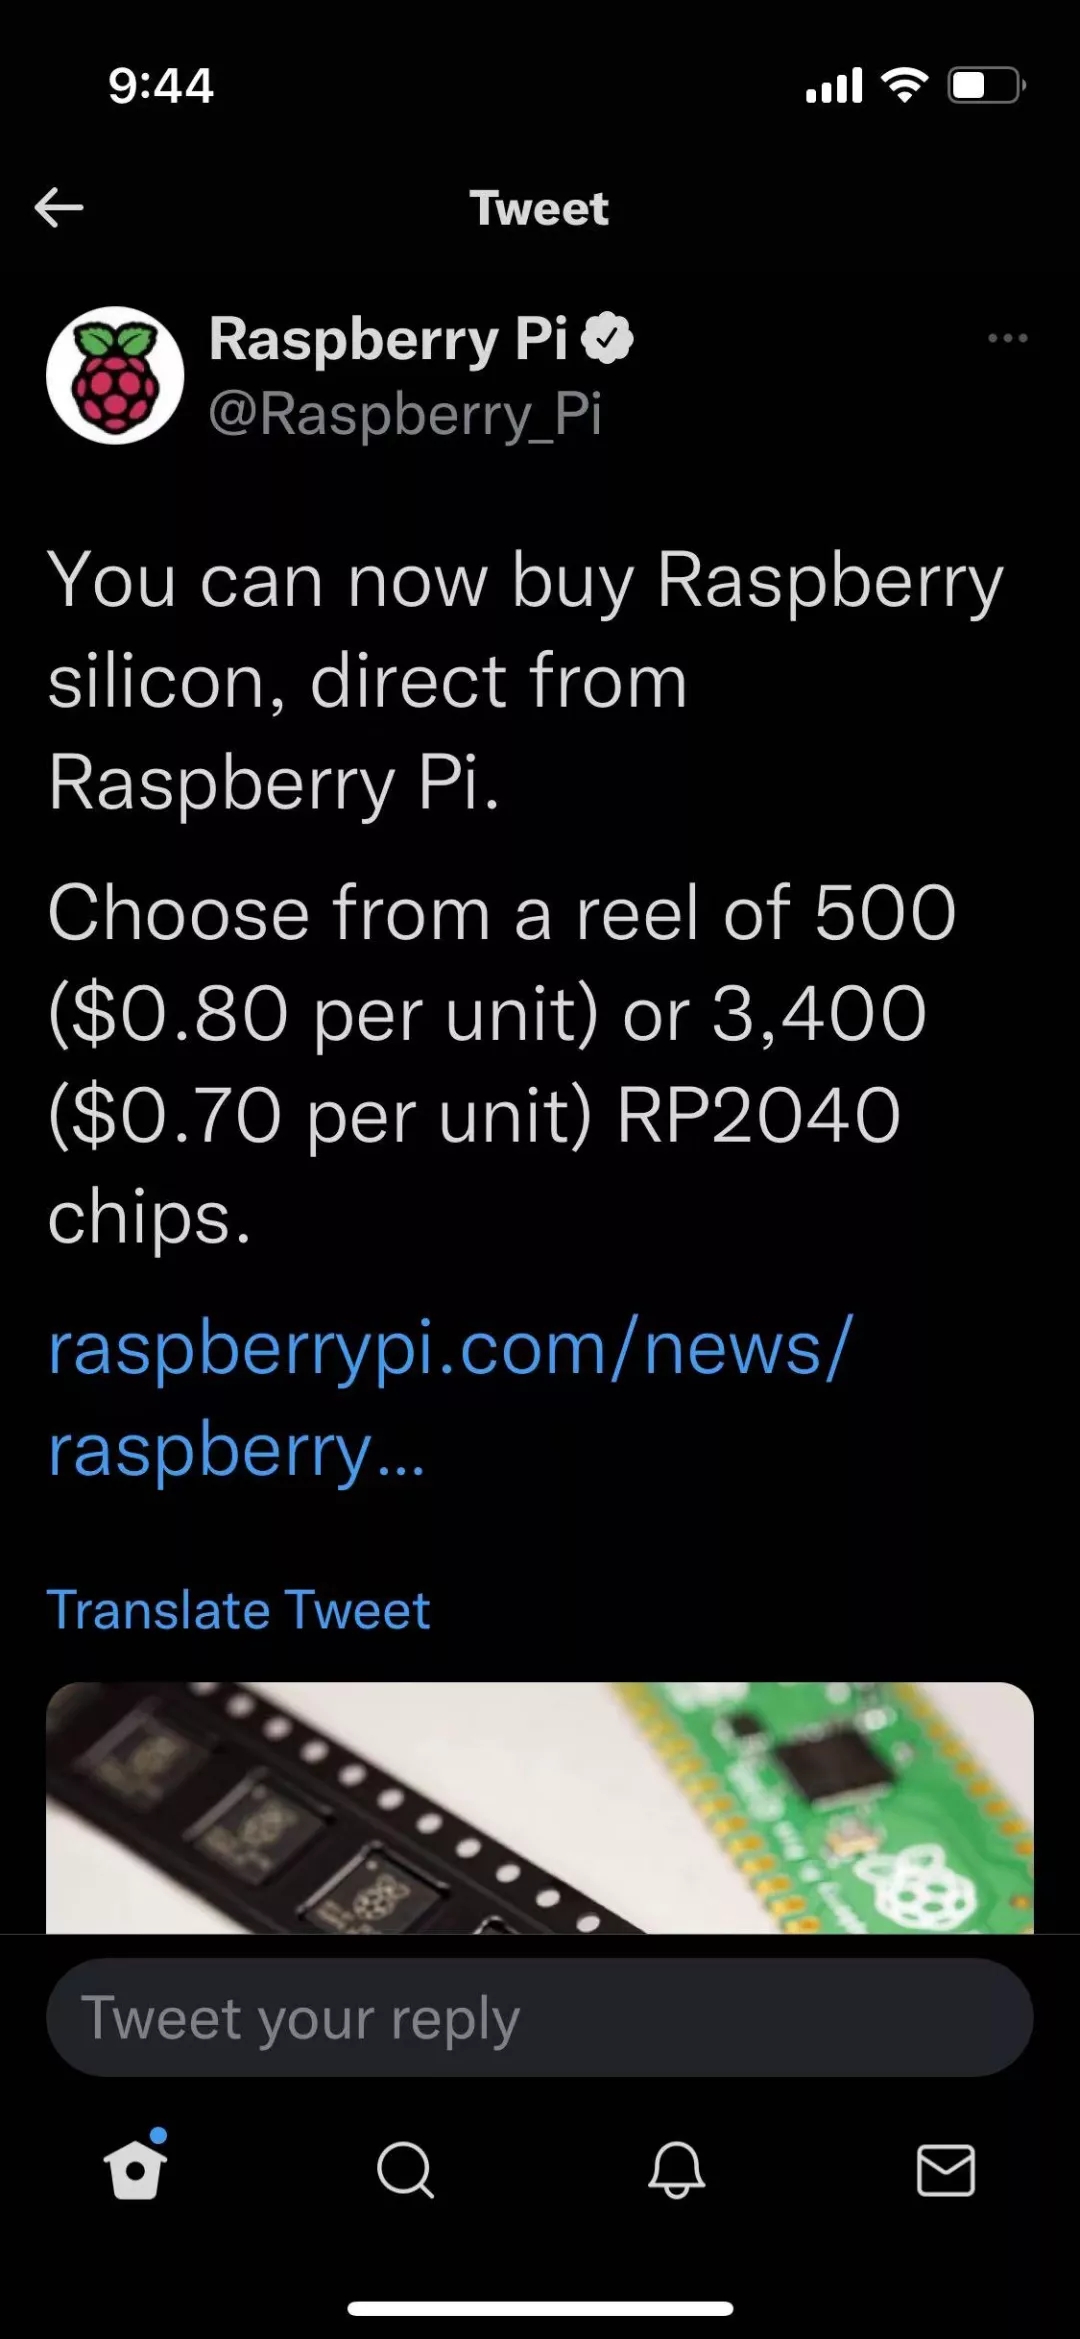 国外芯片技术交流-树莓派要洗牌MCU市场 - 0.7美元的价格、批量直销、2千万颗的锁定产能risc-v单片机中文社区(5)